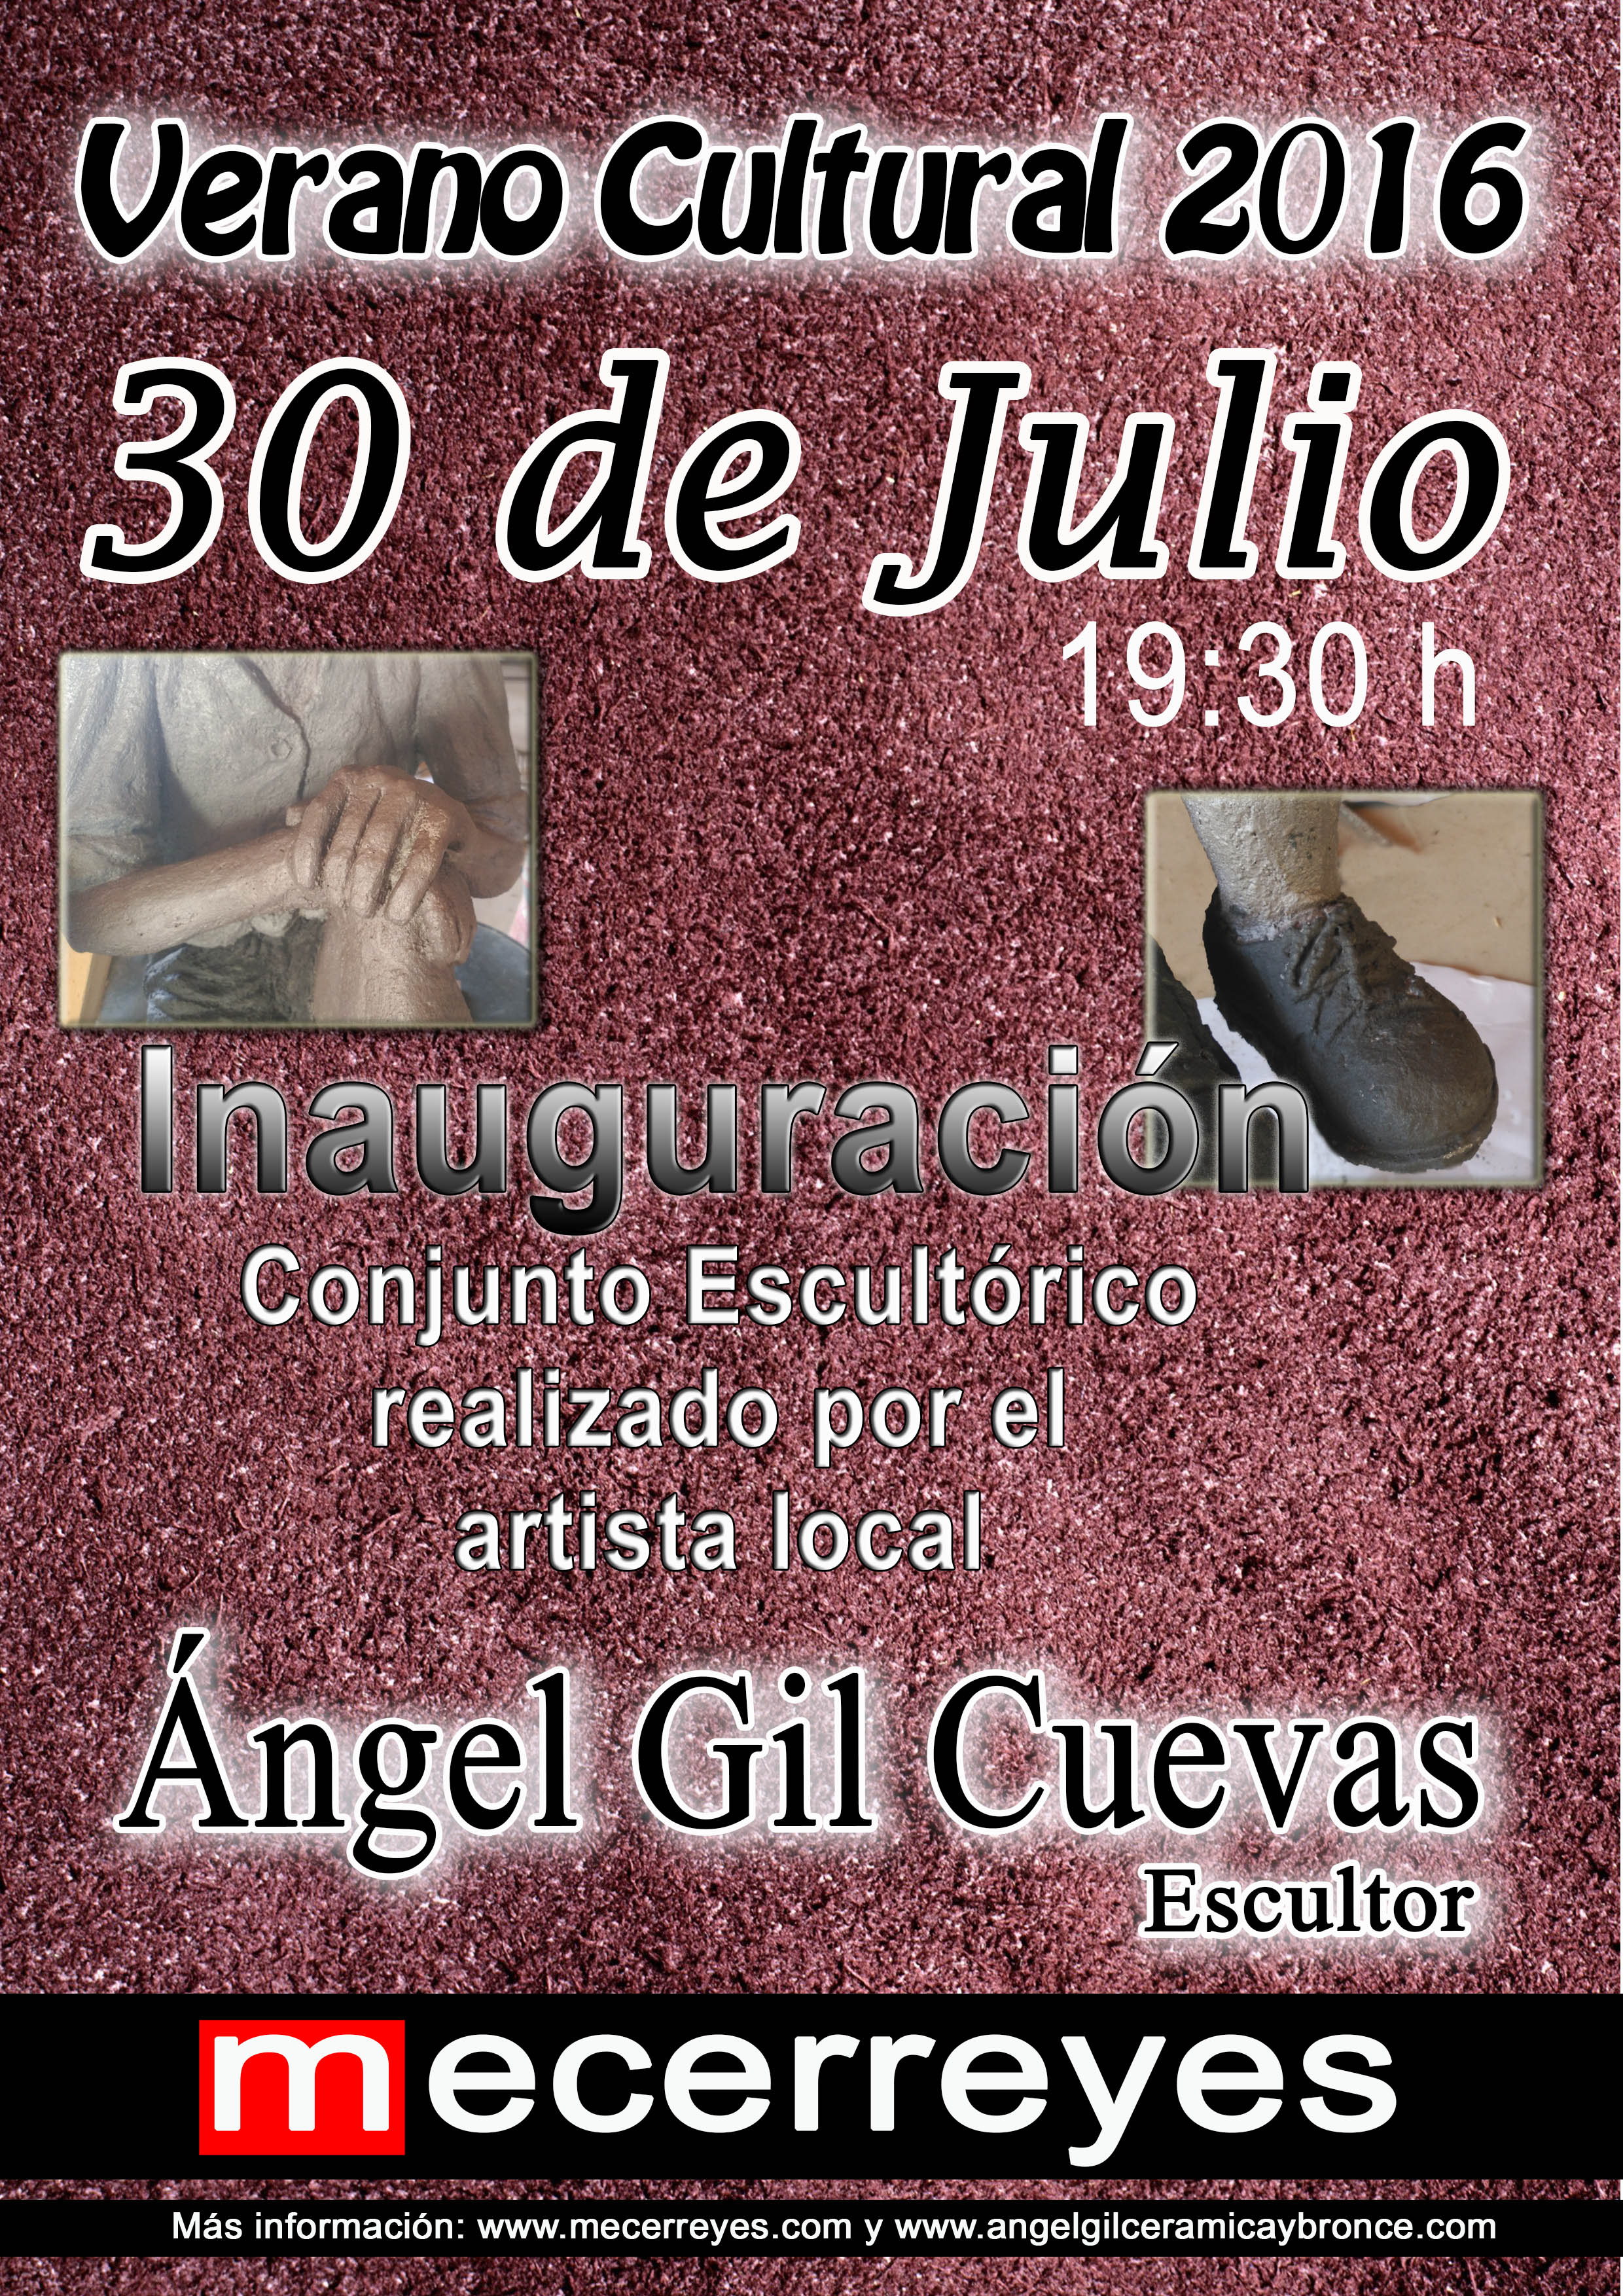 Mecerreyes, Verano Cultural 2016-Angel Gil, esculturas niños